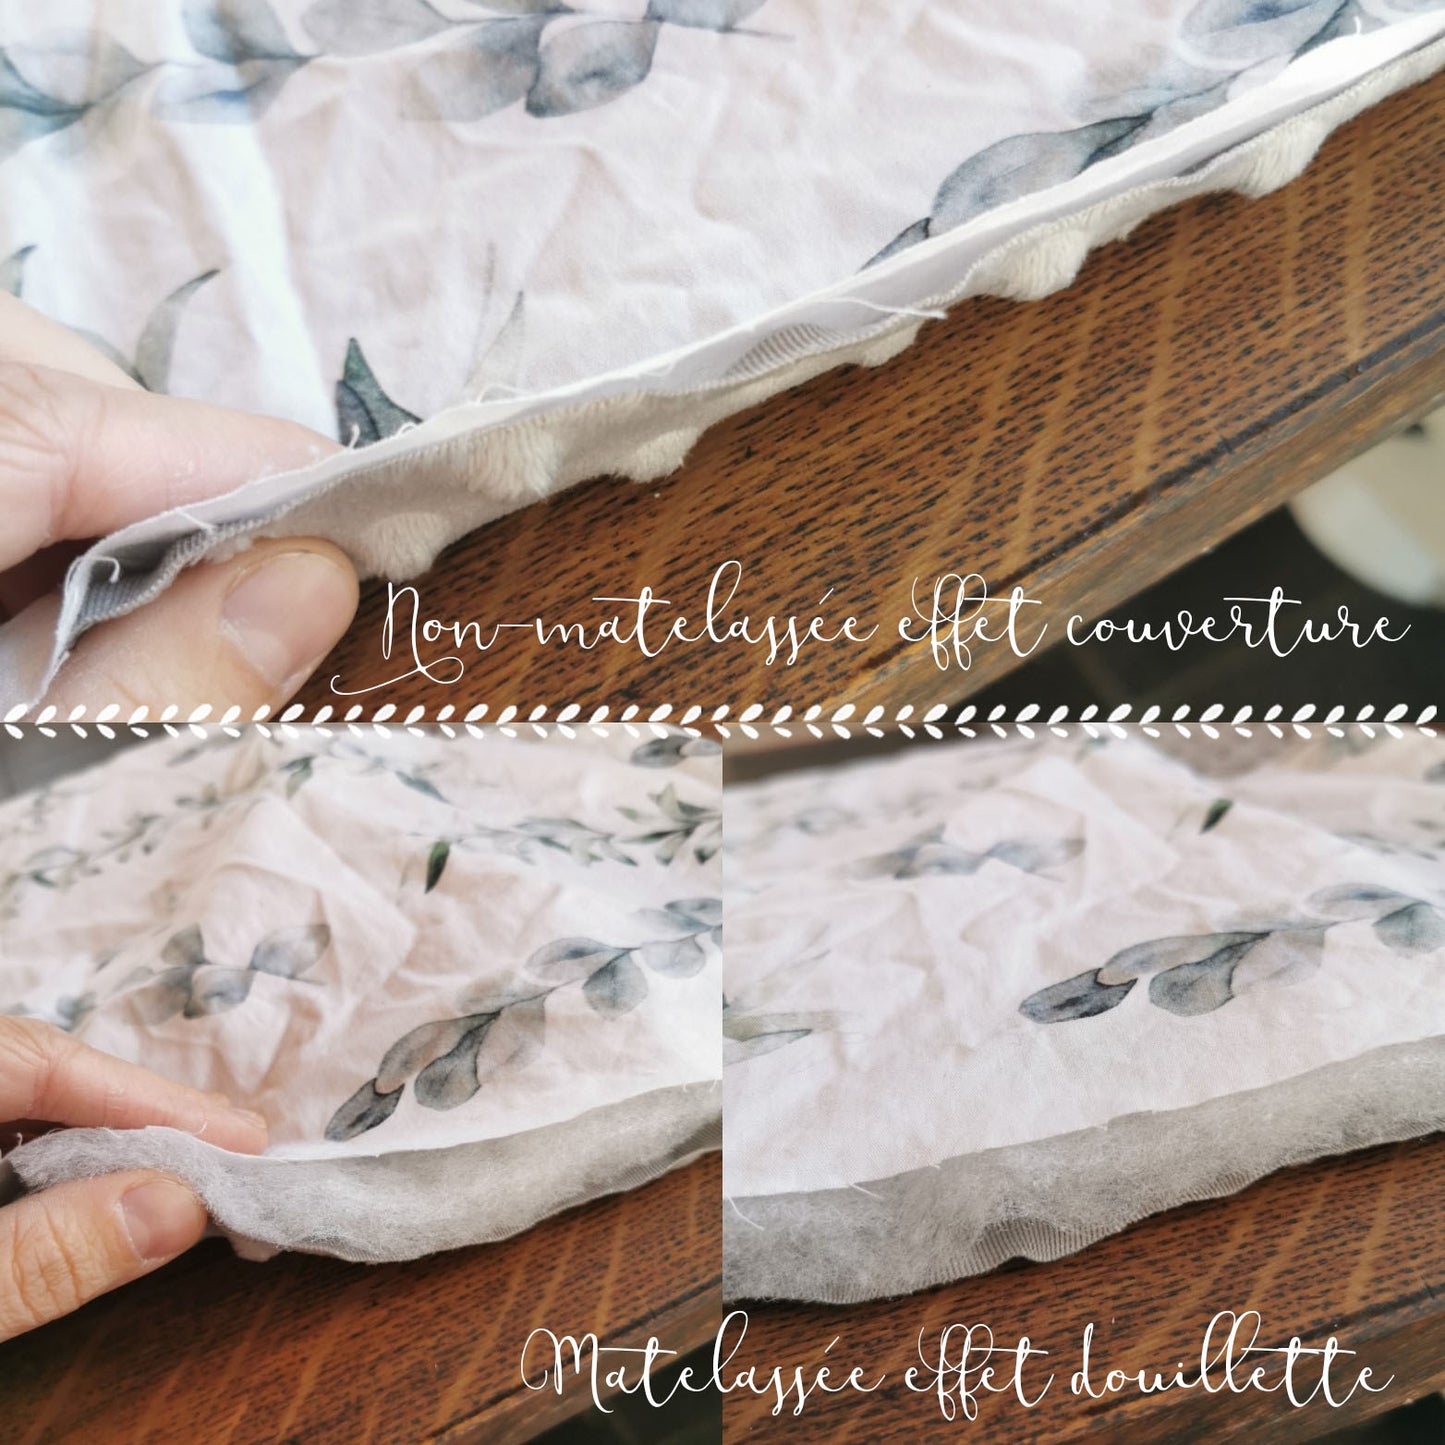 Couverture pour bassinette | Feuillage Olive-Gris animaux d'Asie Patchwork